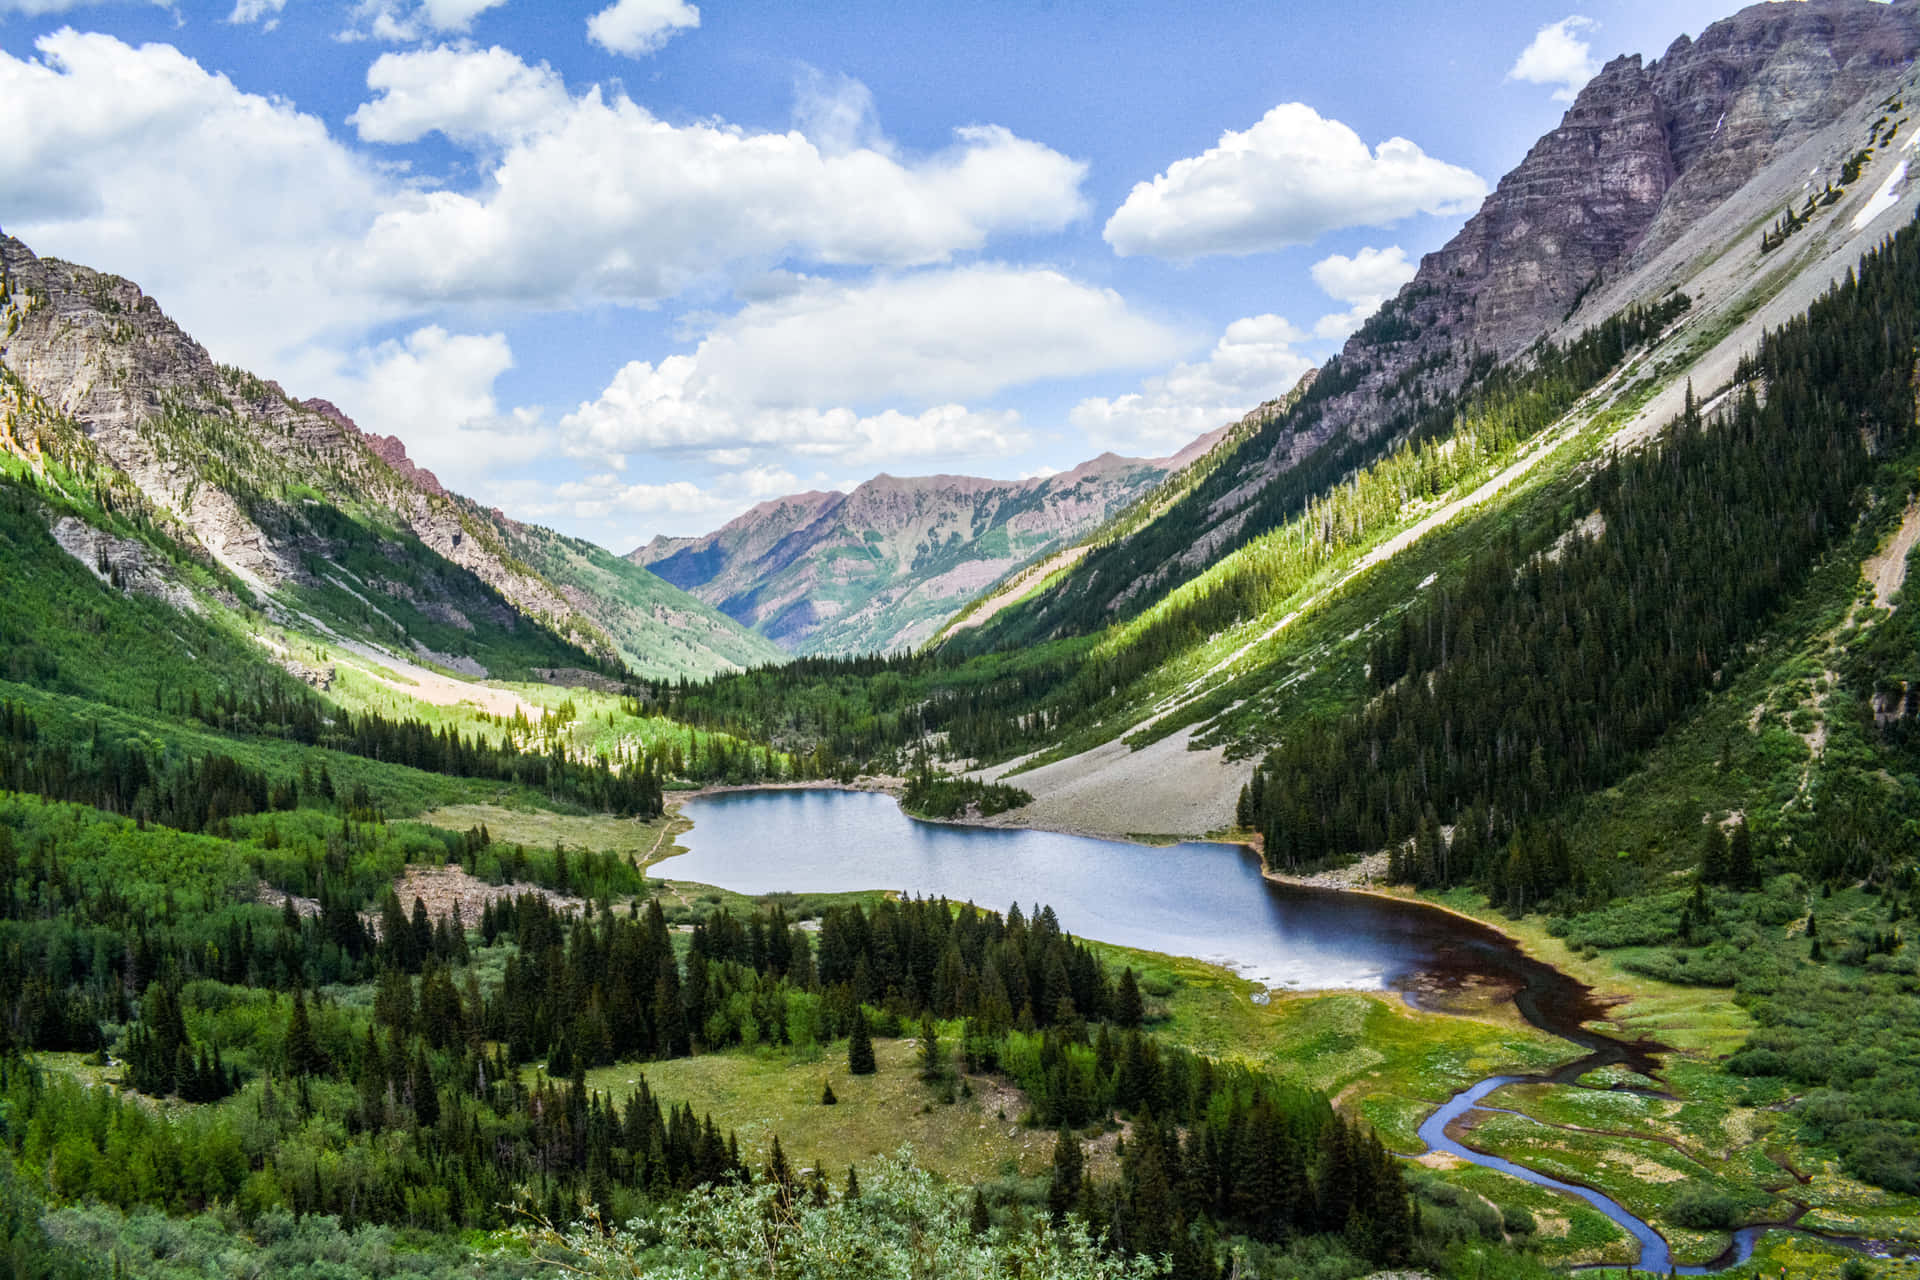 Genießensie Die Schönheit Von Aspen, Colorado Mit Atemberaubender Aussicht Auf Die Rocky Mountains.